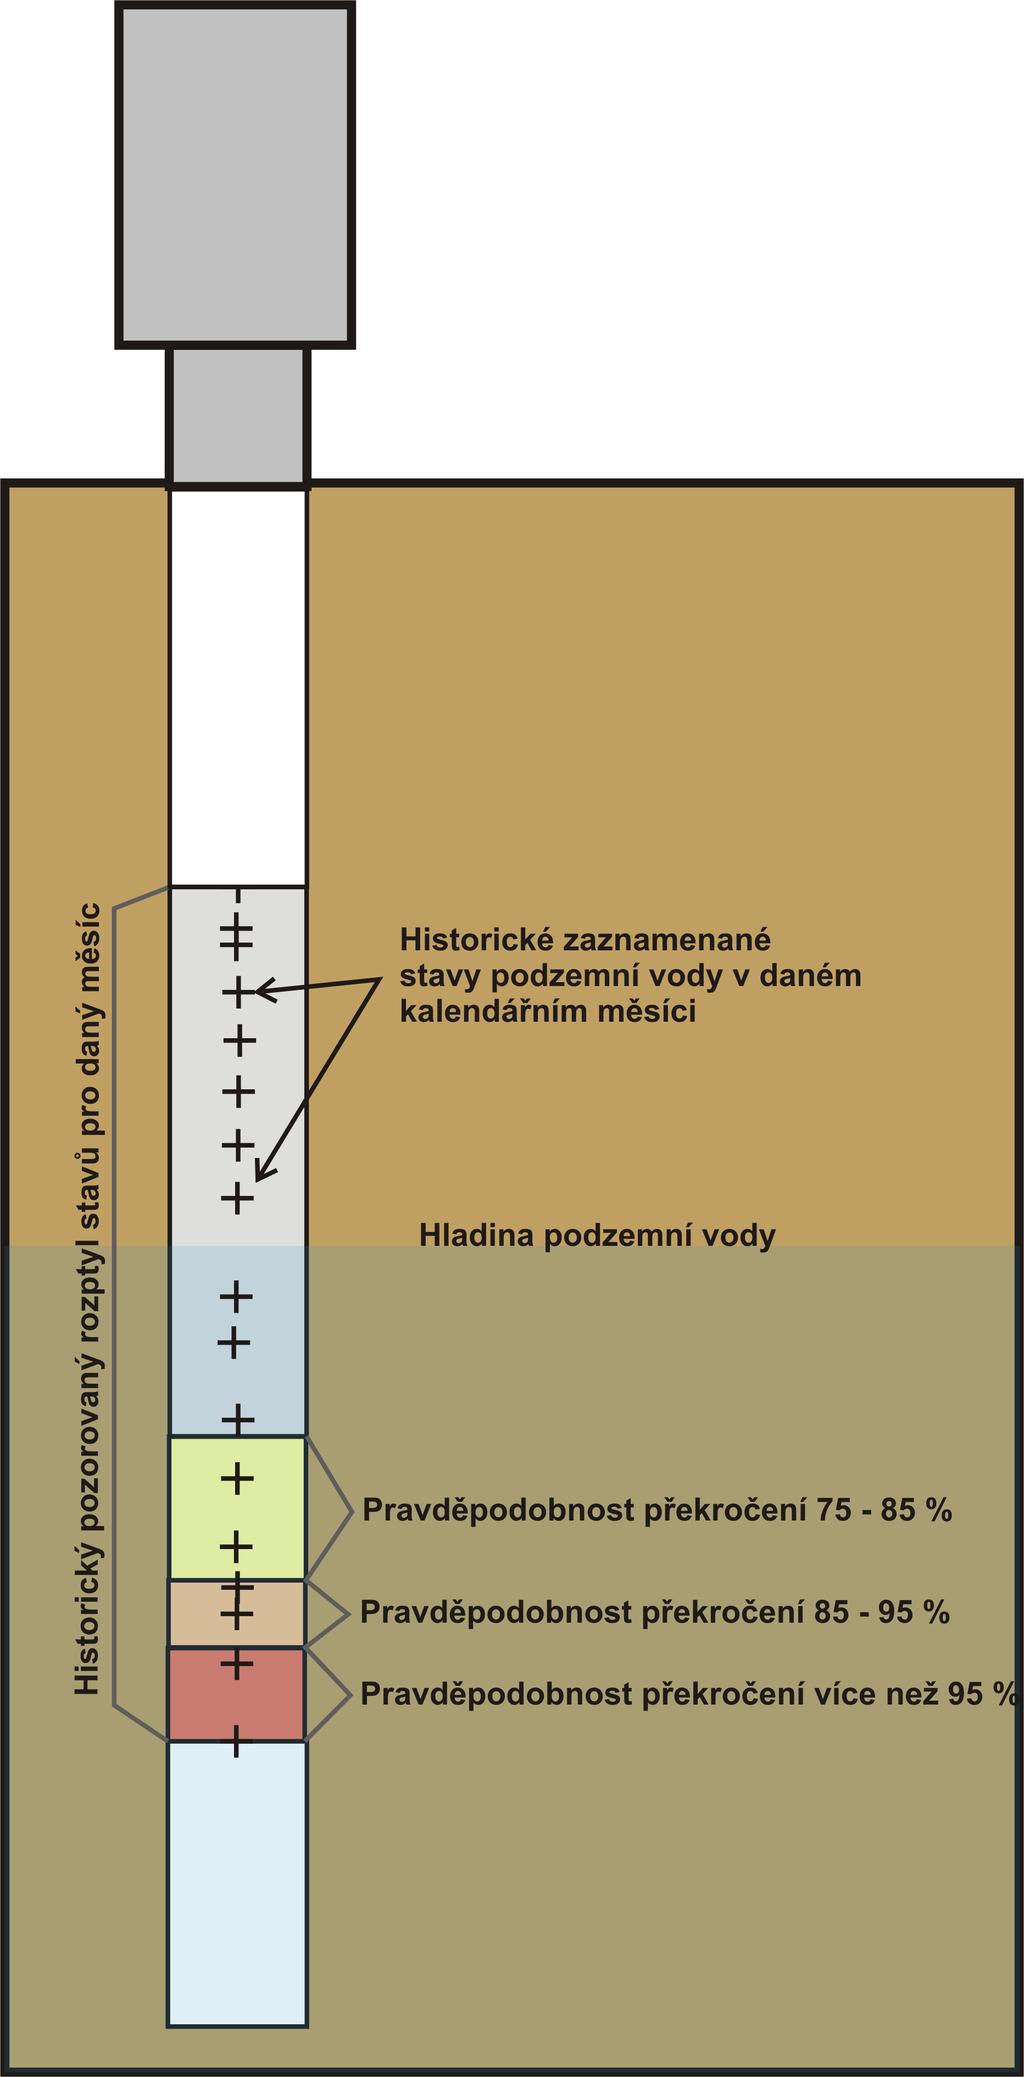 E. Podzemní vody U podzemních vod je stav sucha definován pomocí pravděpodobnosti výskytu dané hladiny ve vrtu v daném kalendářním měsíci.